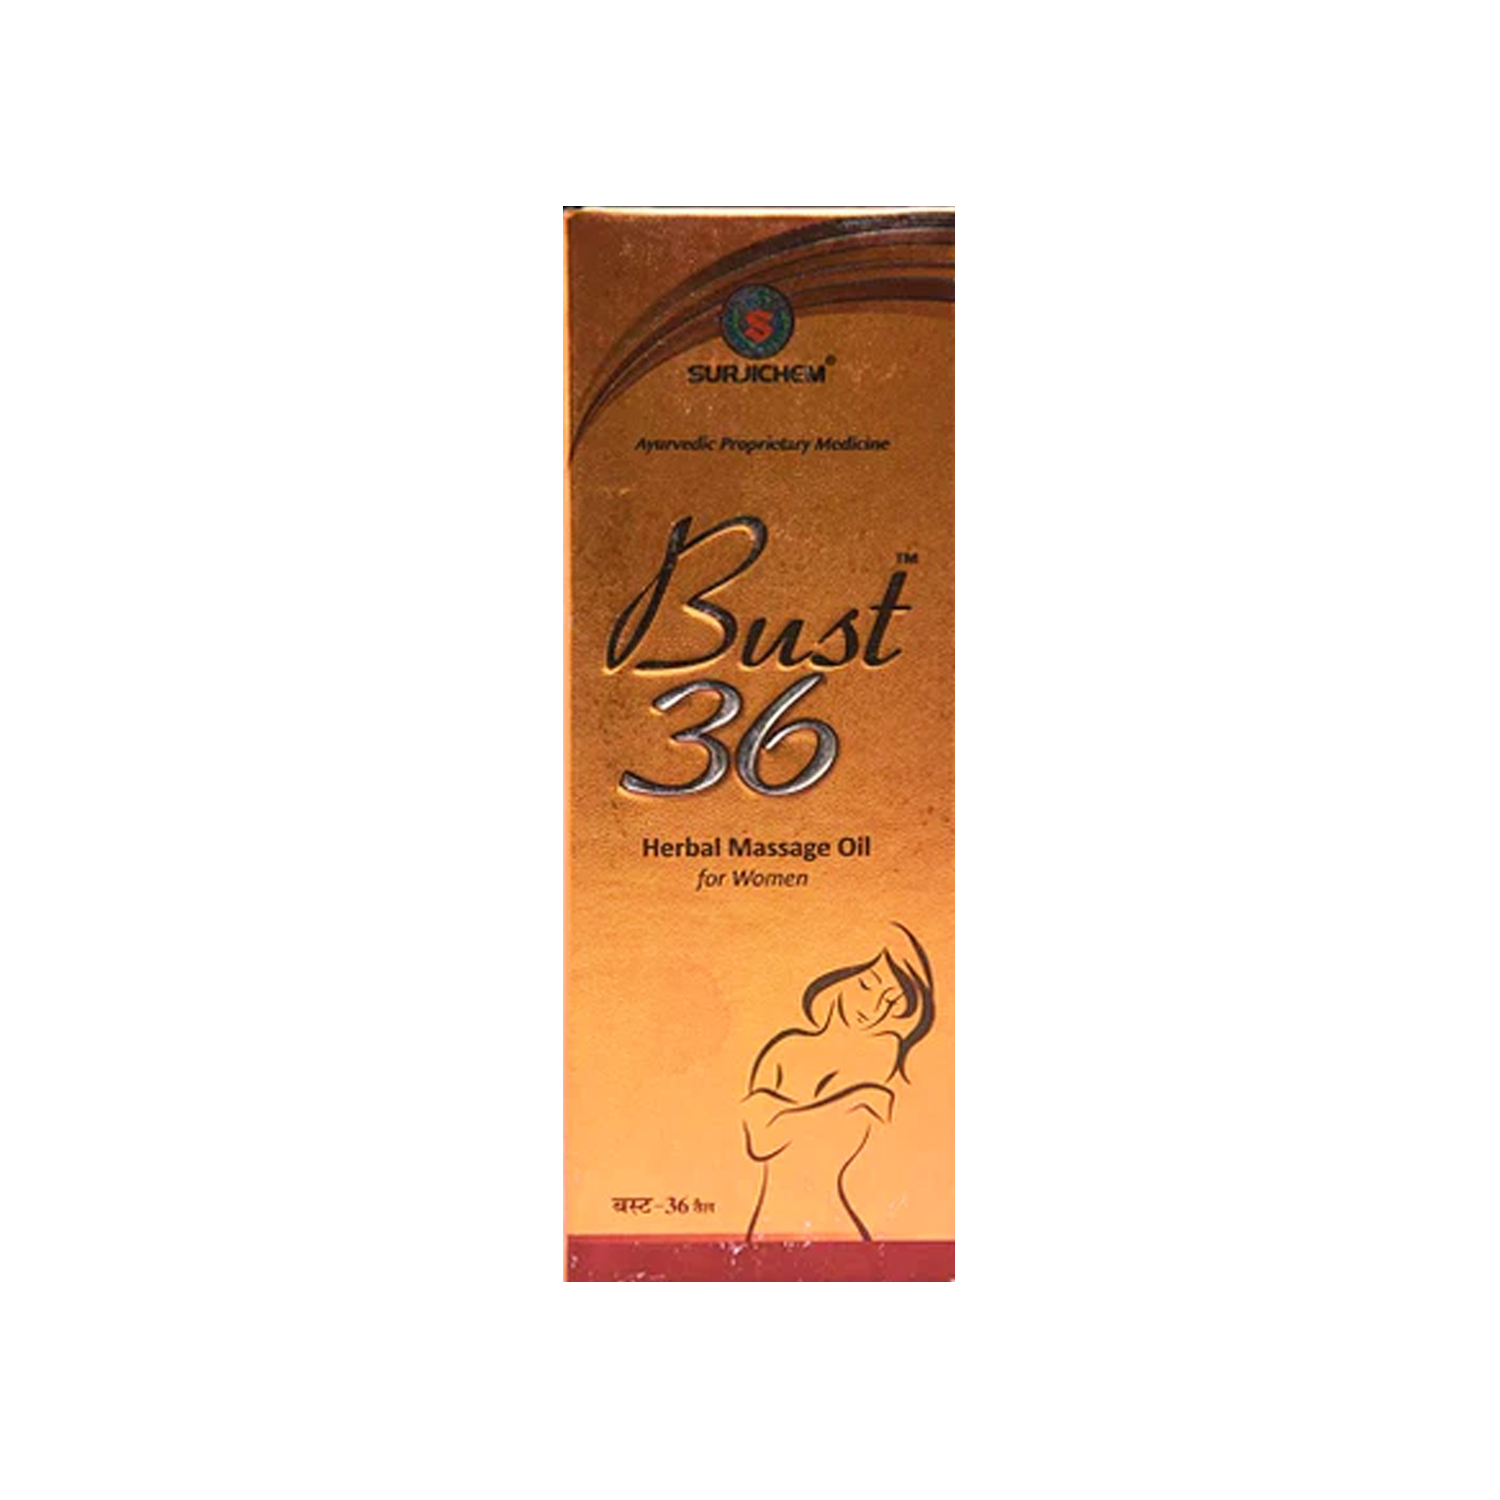 Bust 36 gel for Women 100ml @ ₹190  Best Herbal Breast Massage Oil - Cureka